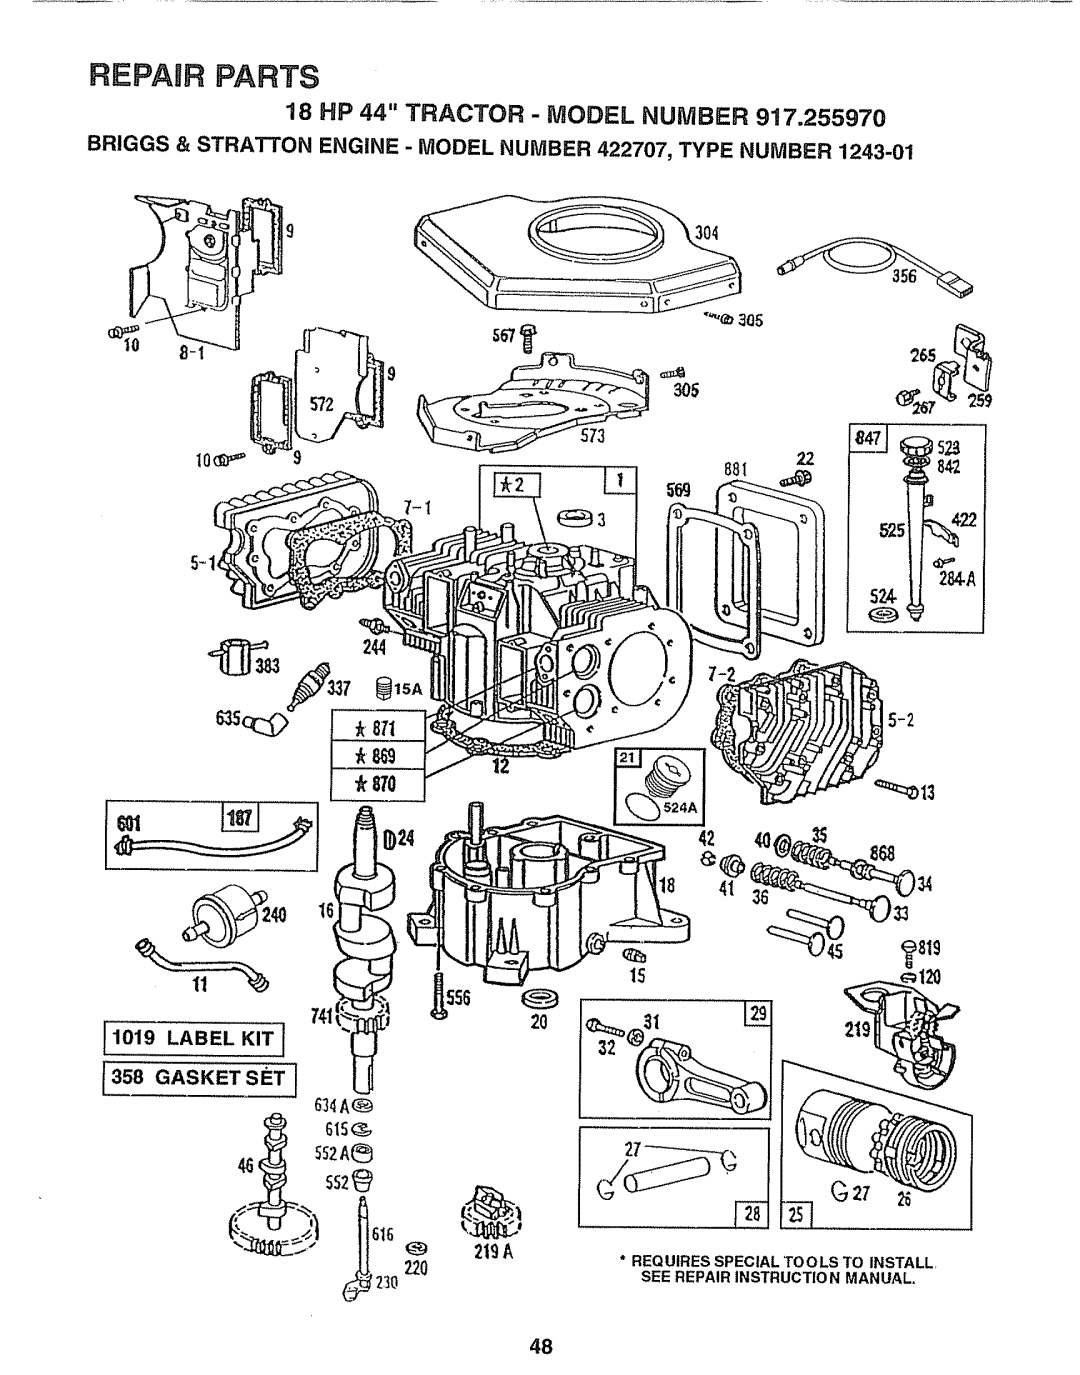 Sears 917.25597 owner manual 2O219, Repair Parts, 18 HP 44 TRACTOR - MODEL NUMBER 